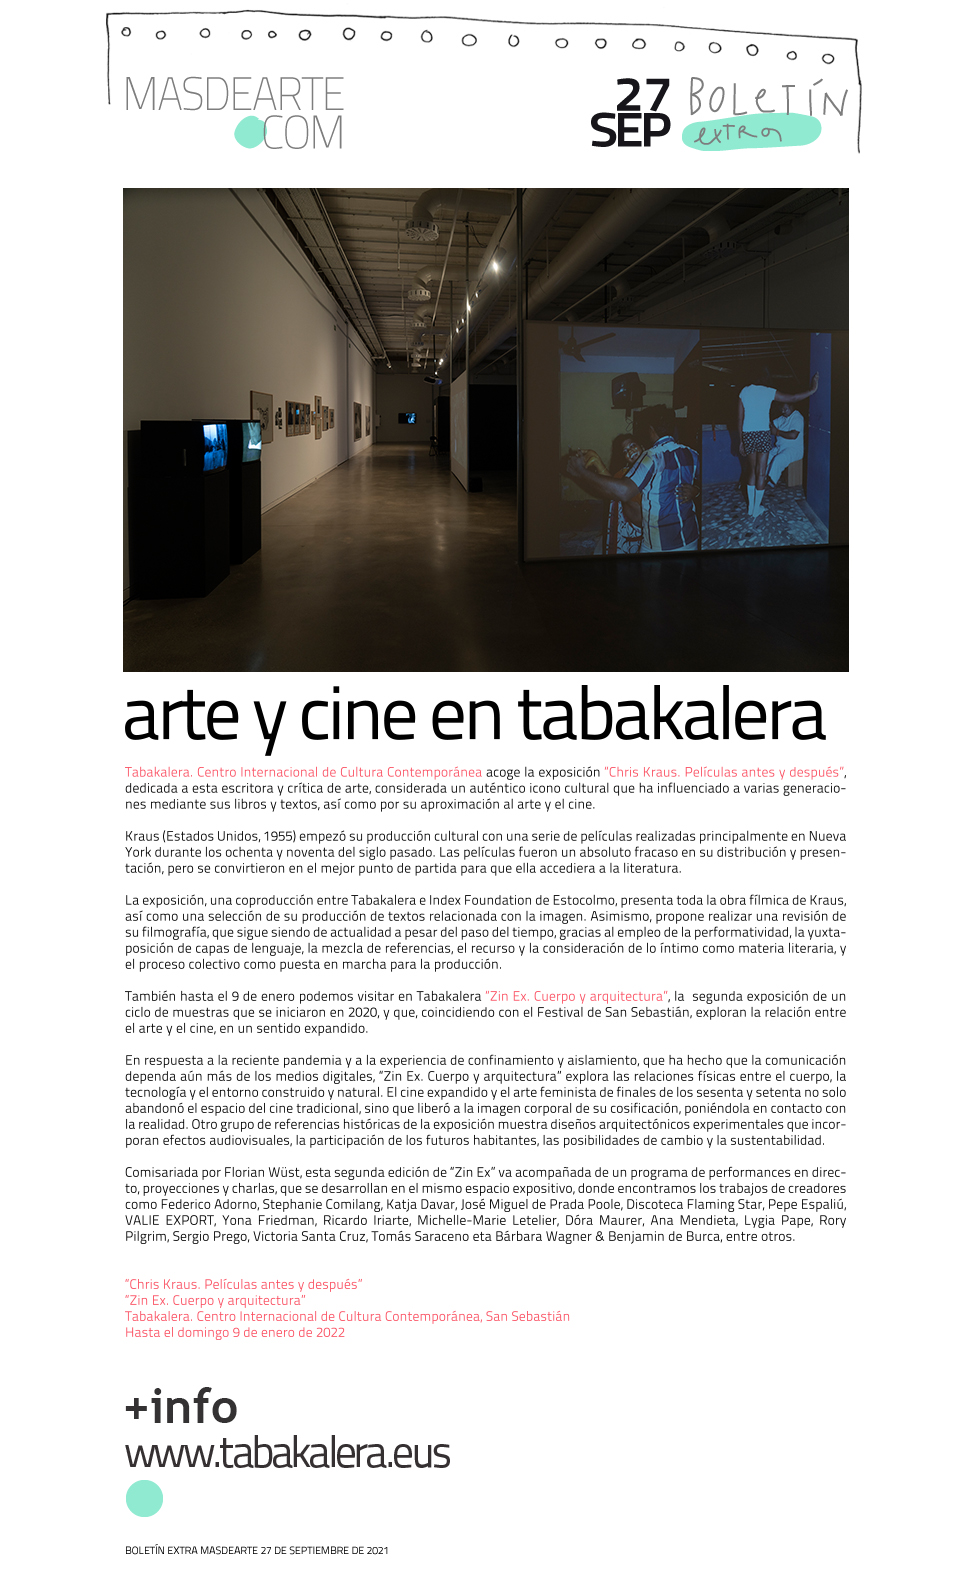 Nuevas exposiciones de arte contemporáneo y cine en Tabakalera:
 'Chris Kraus. Películas antes y después' y 'Zin Ex. Cuerpo y arquitectura'. Hasta el 9 de enero de 2022